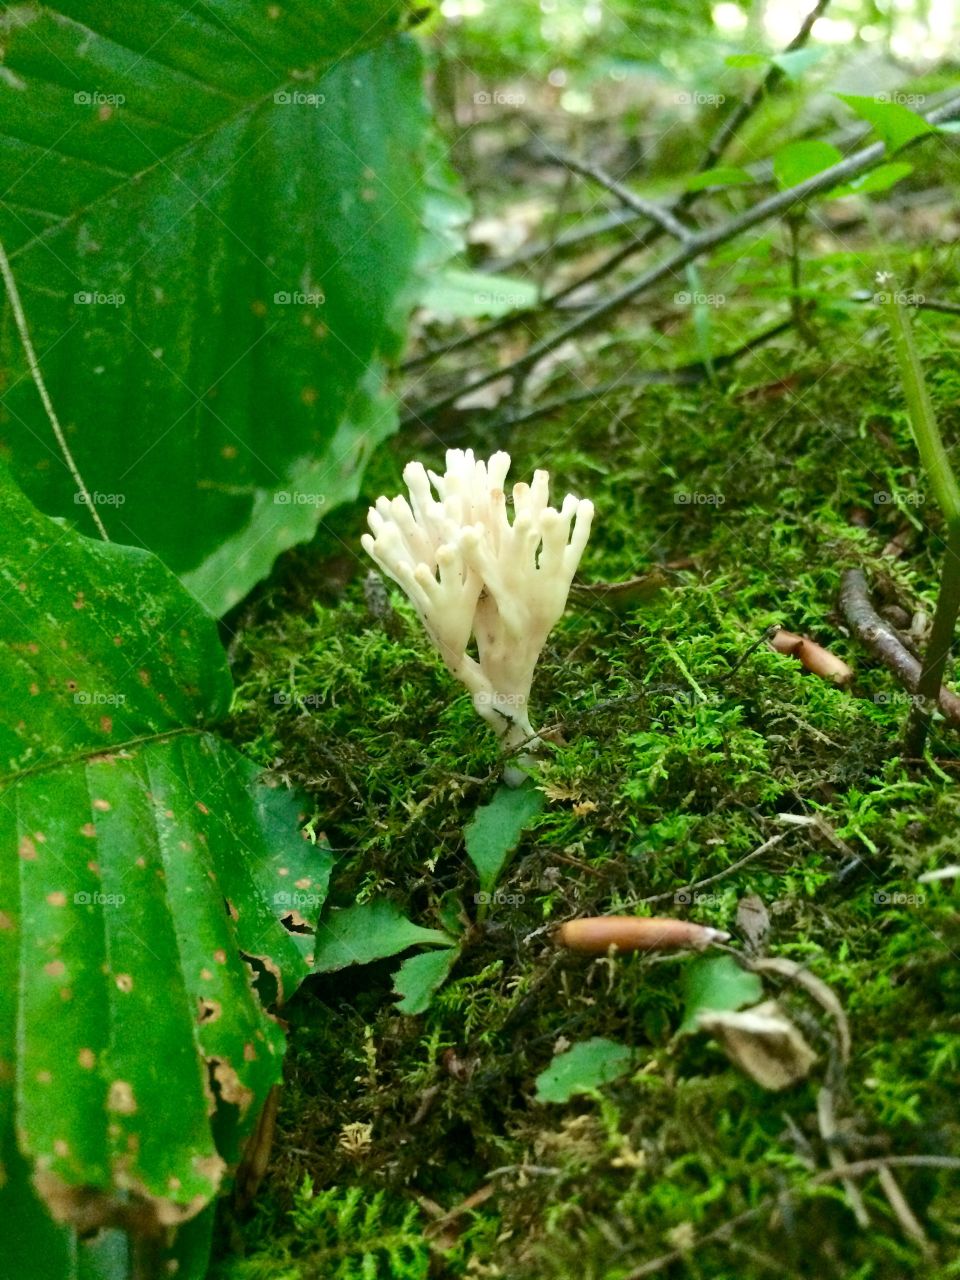 Some kind of mushroom 